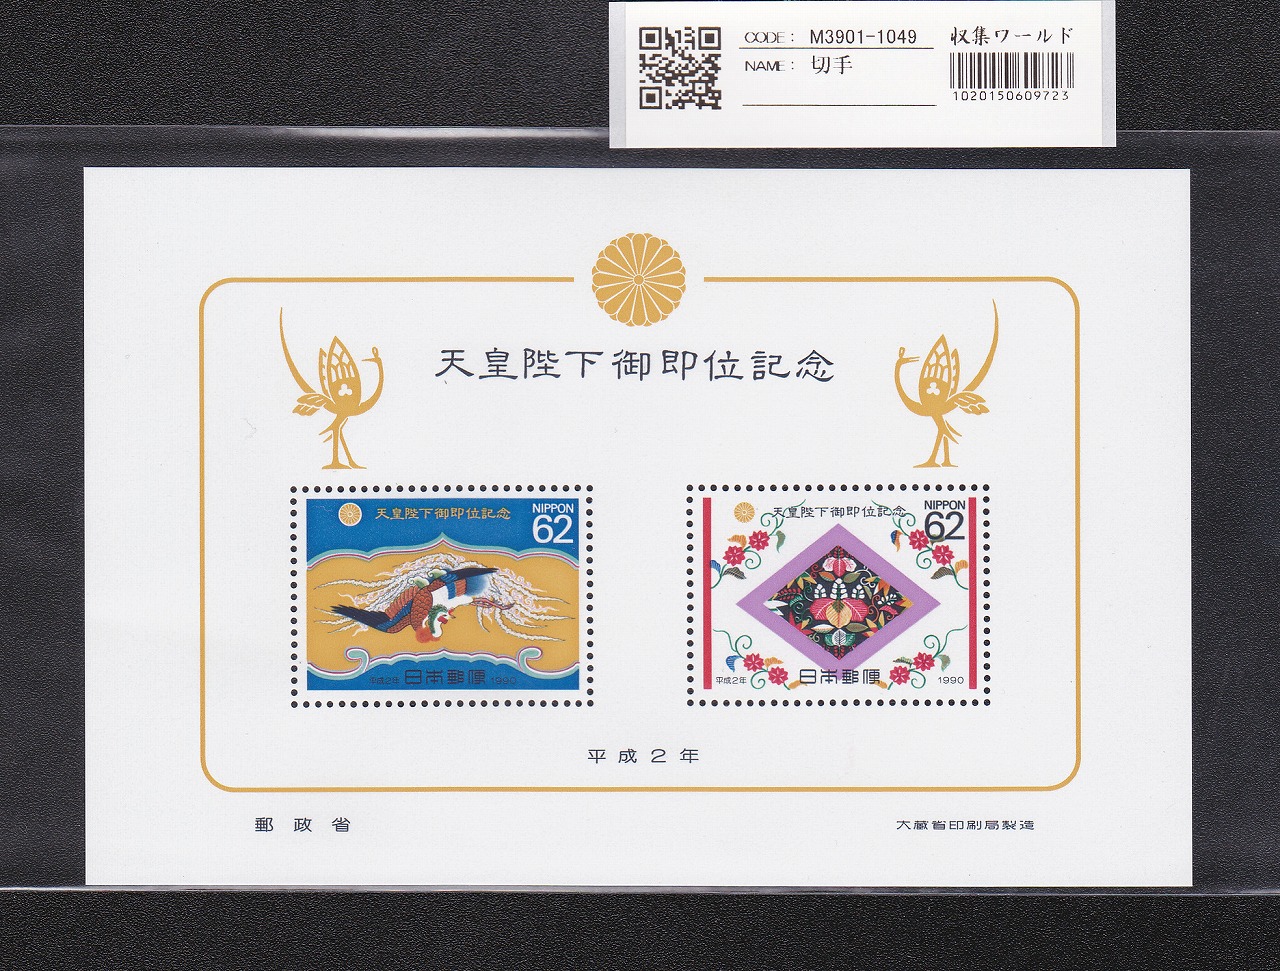 天皇陛下御即位記念 小型シート 1990年(平成2年) 62円×2枚 未使用